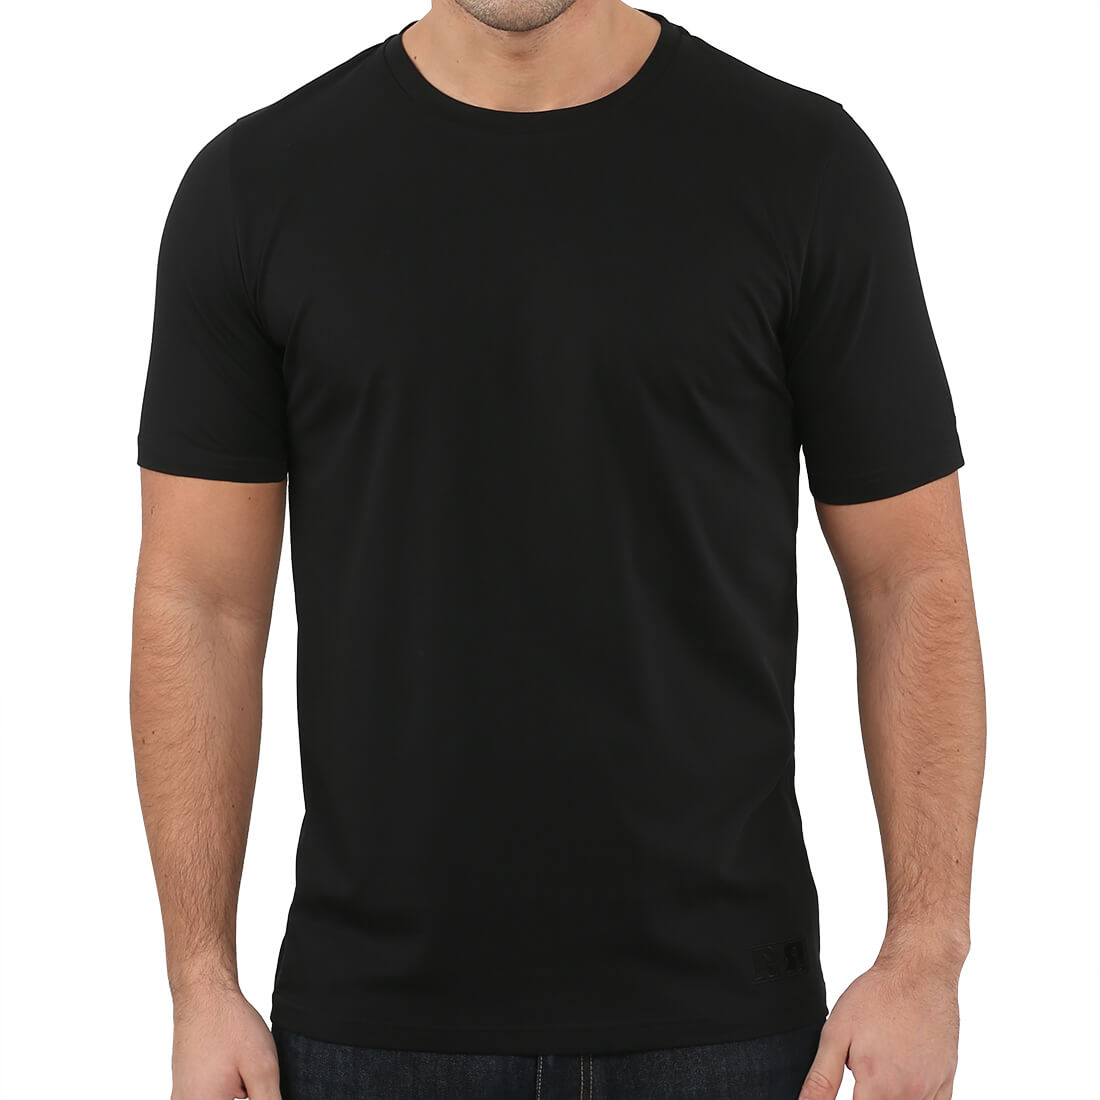 Men's Black T-shirt | Men's Supima Cotton T-shirts | Retro Red